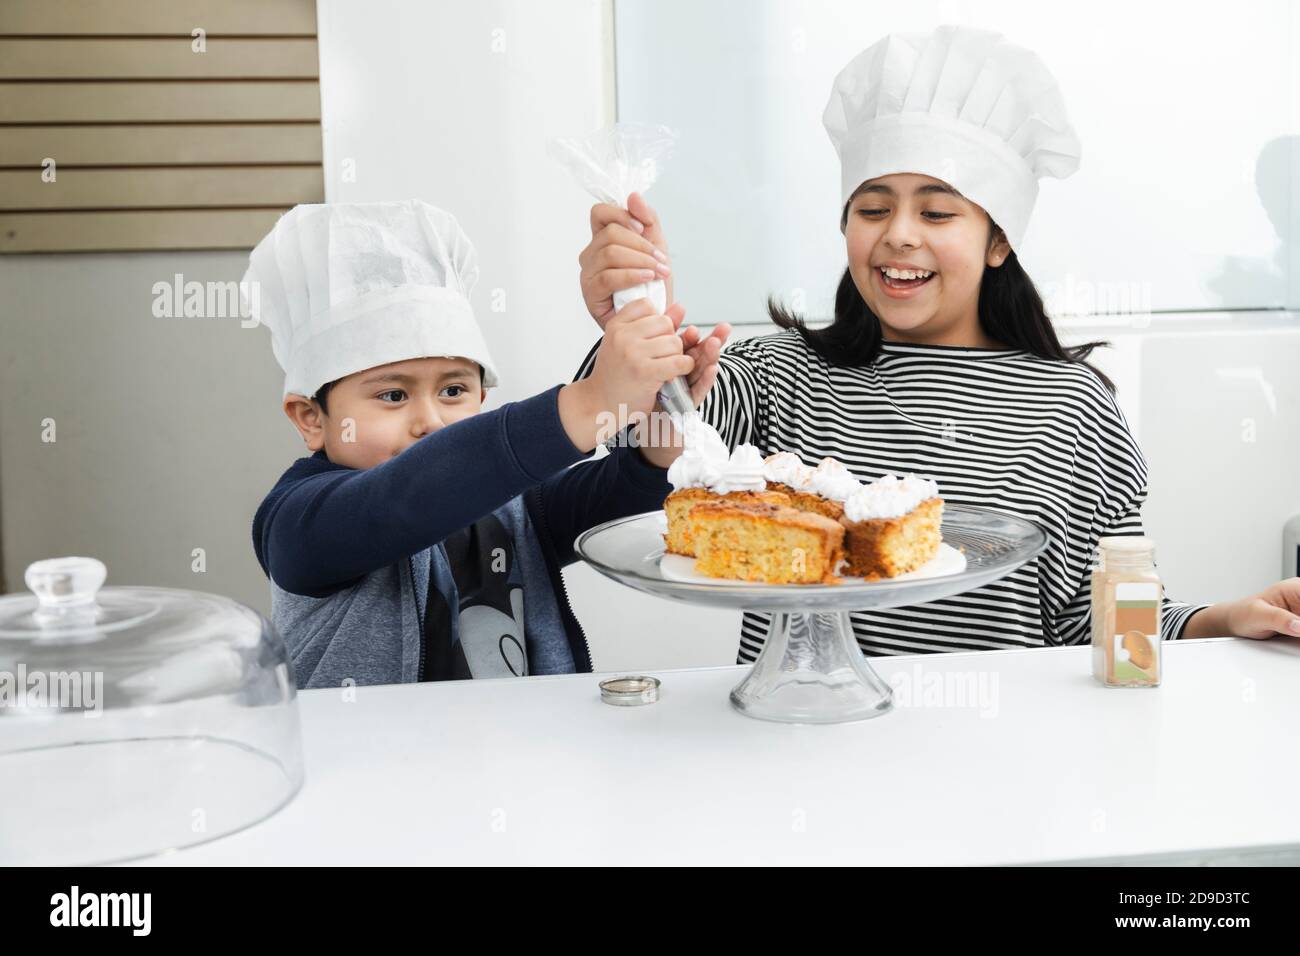 Enfants hispaniques décorant un gâteau avec de la crème fouettée - Latino frères et sœurs s'amuser tout en mettant de la crème fouettée sur le gâteau - les enfants cuisent Banque D'Images